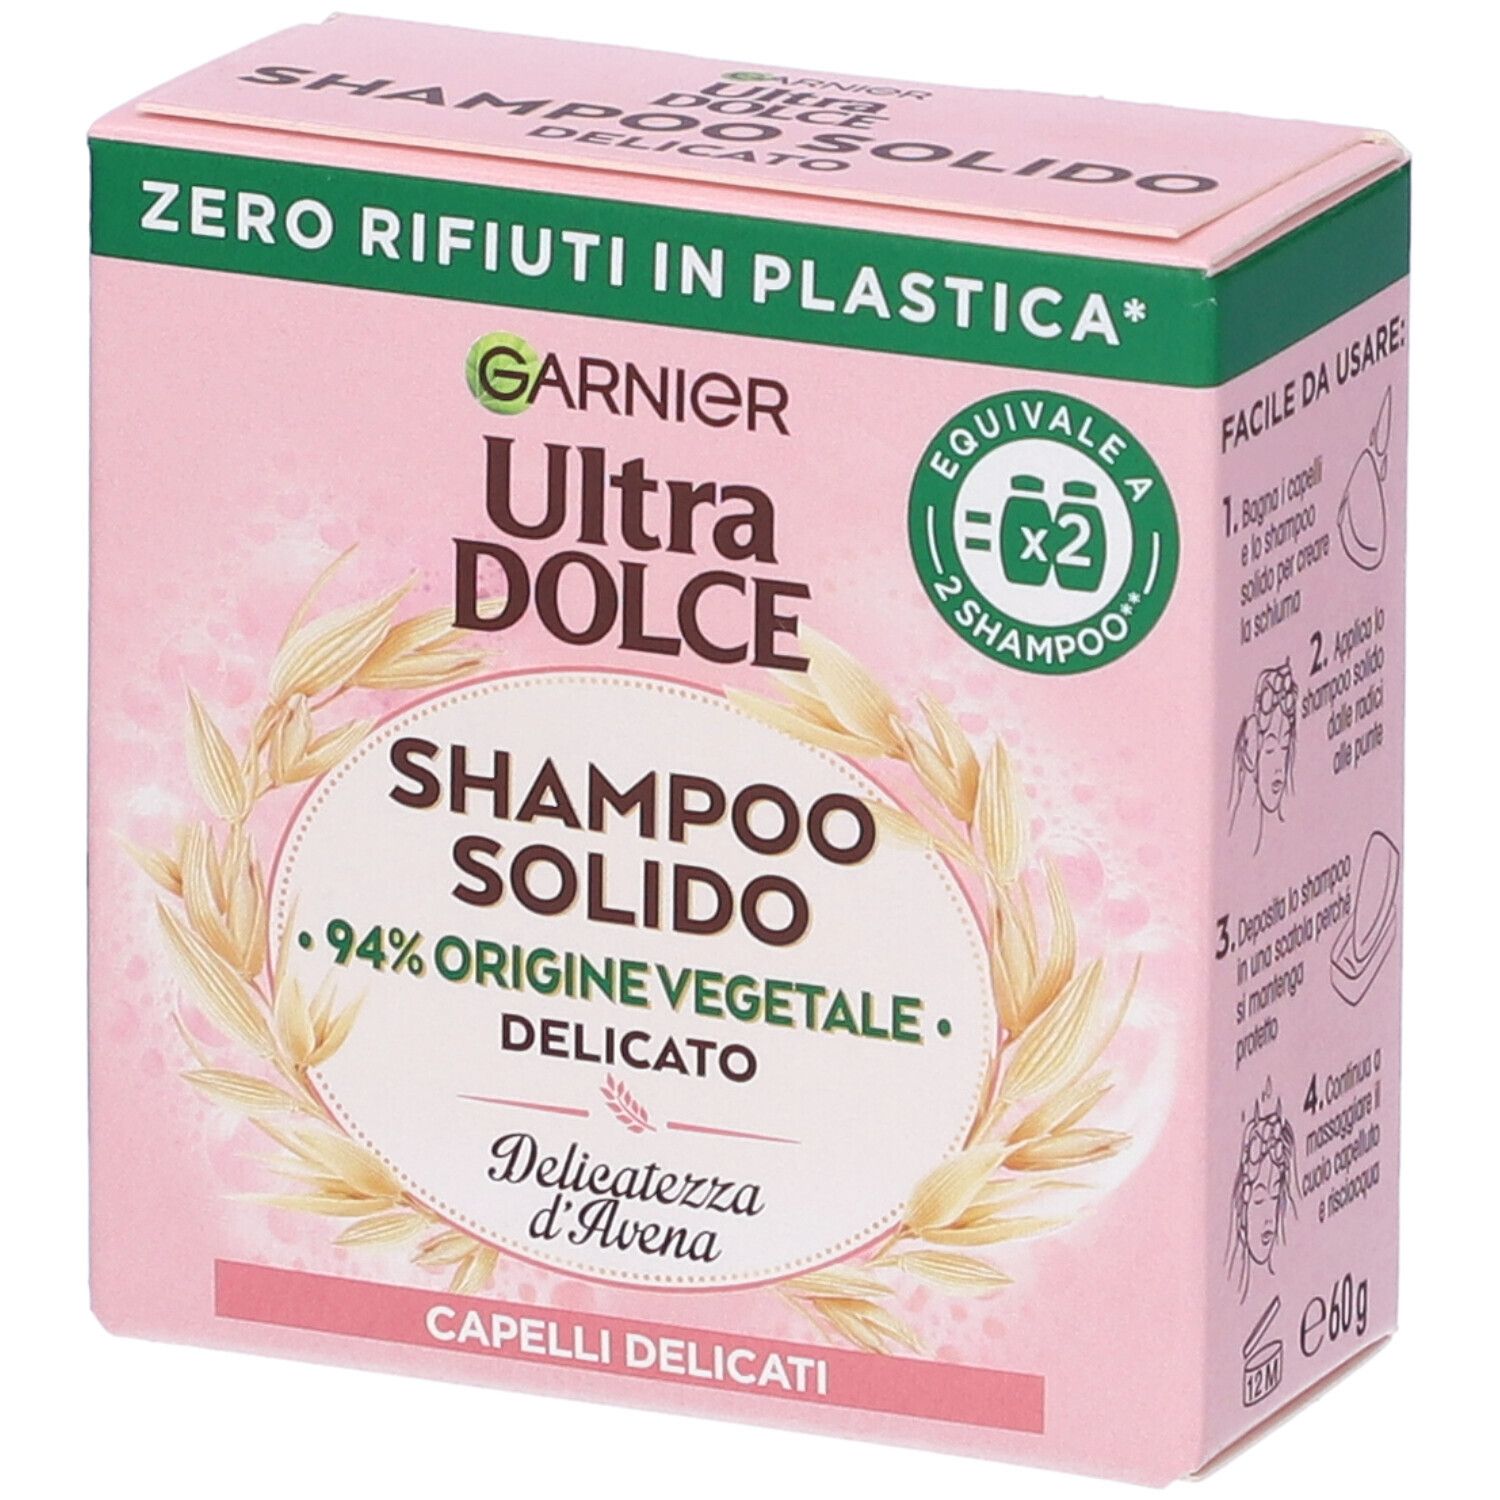 Garnier Ultra Dolce Shampoo Solido Delicatezza D’Avena, Per Cute sensibile e Capelli Delicati, Con packaging 100% ecologico plastic-free, 60 gr